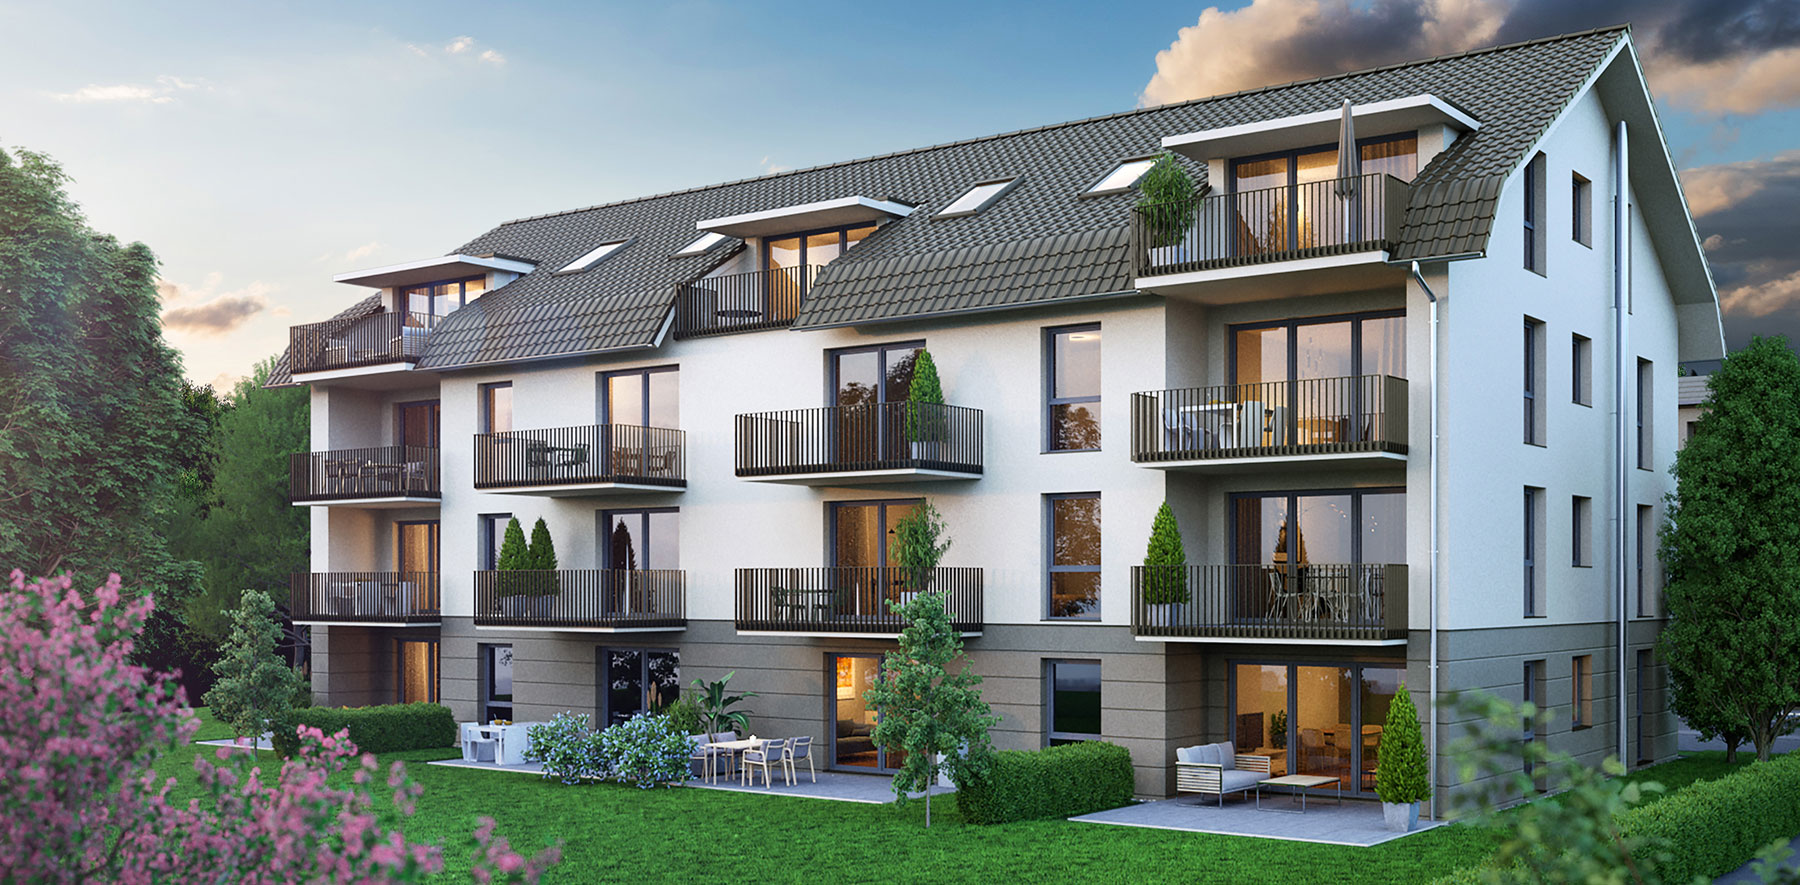 Das Merz Immobilen Wohnbauprojekt in Dietingen